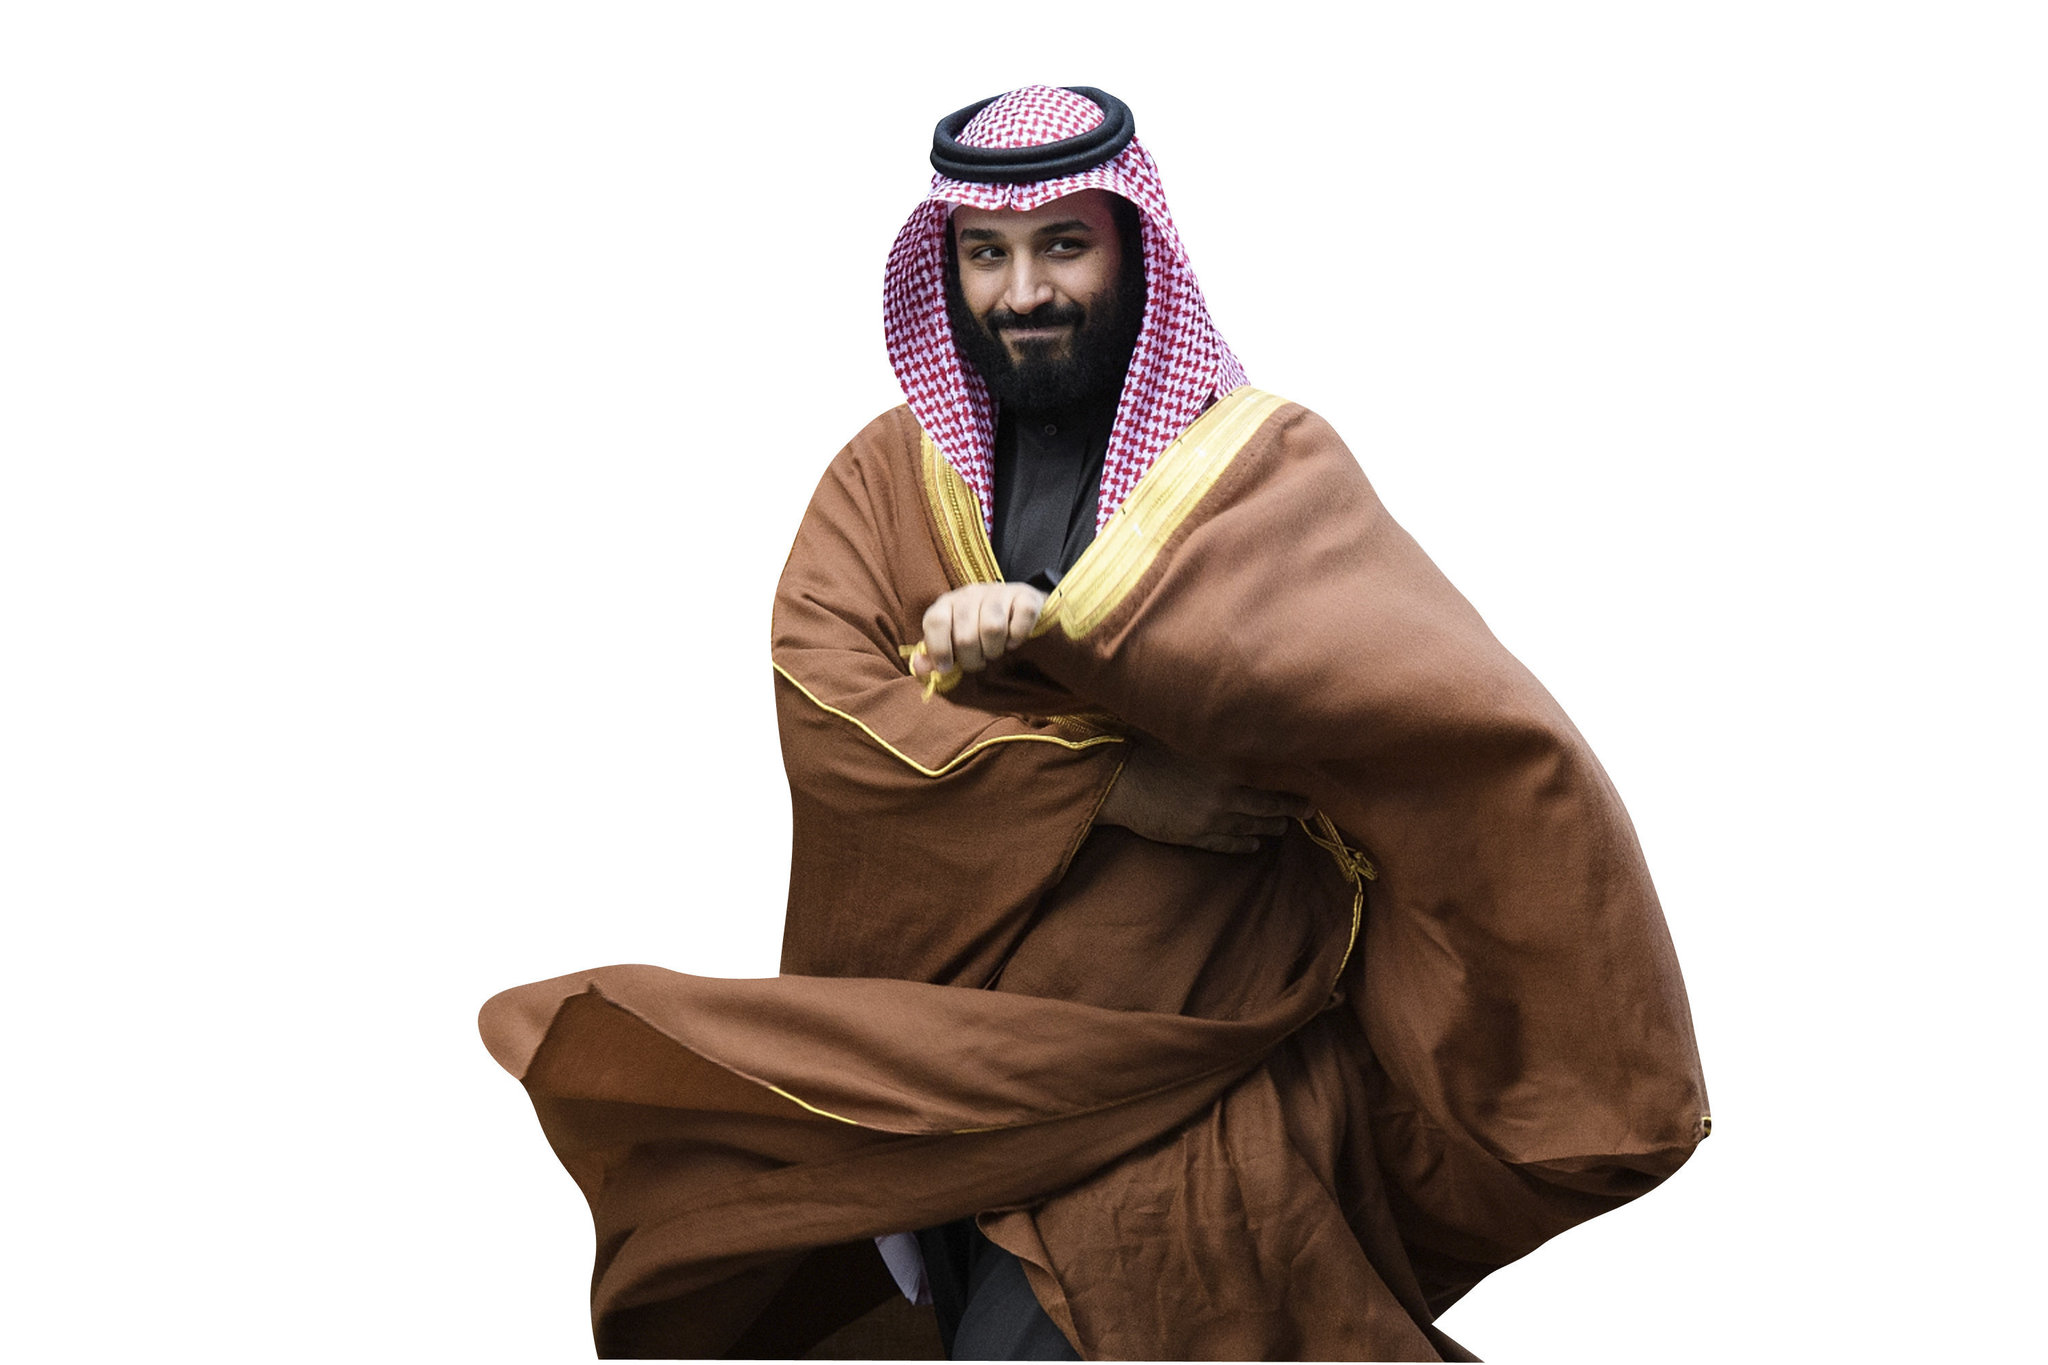 Tüm dünyanın gözünün üzerinde olduğu Prens Muhammed Bin Selman ile ilgili çarpıcı gerçekler